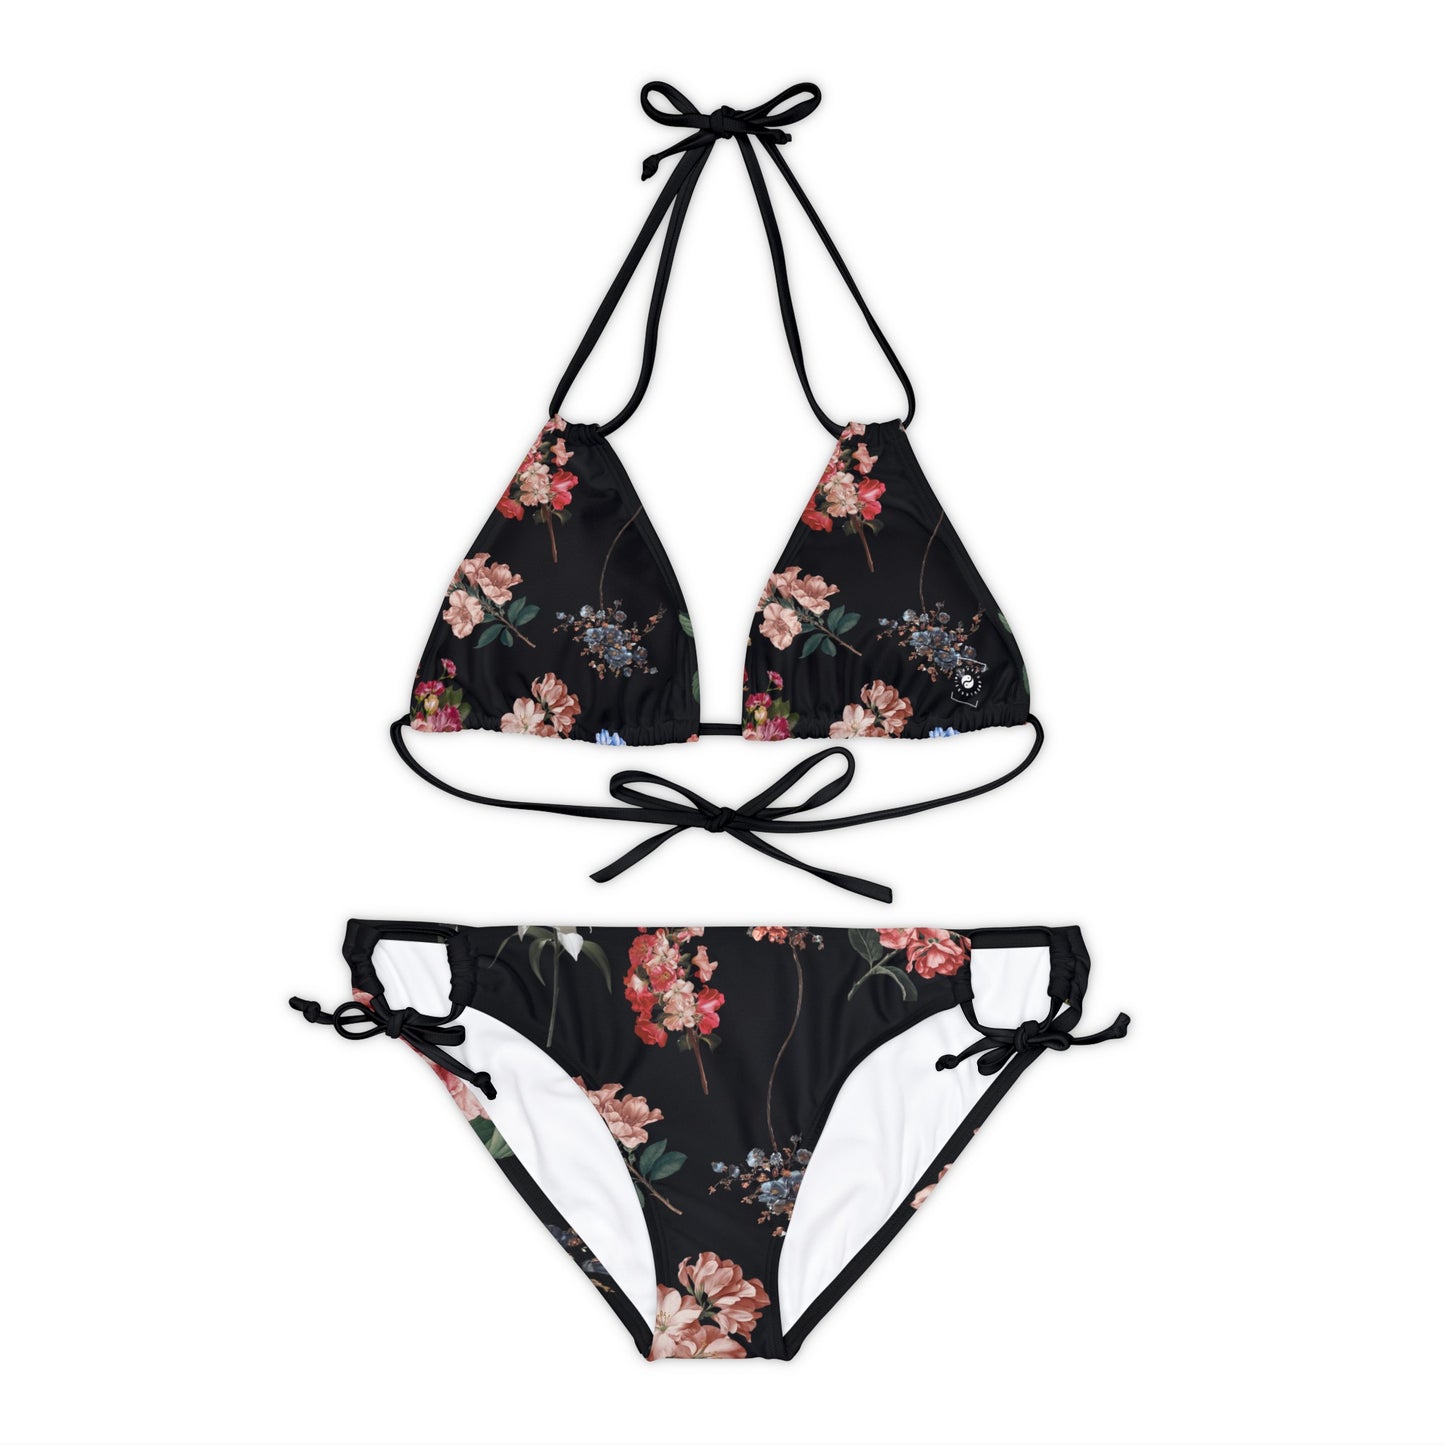 Botanicals on Black - Lace-up Bikini Set